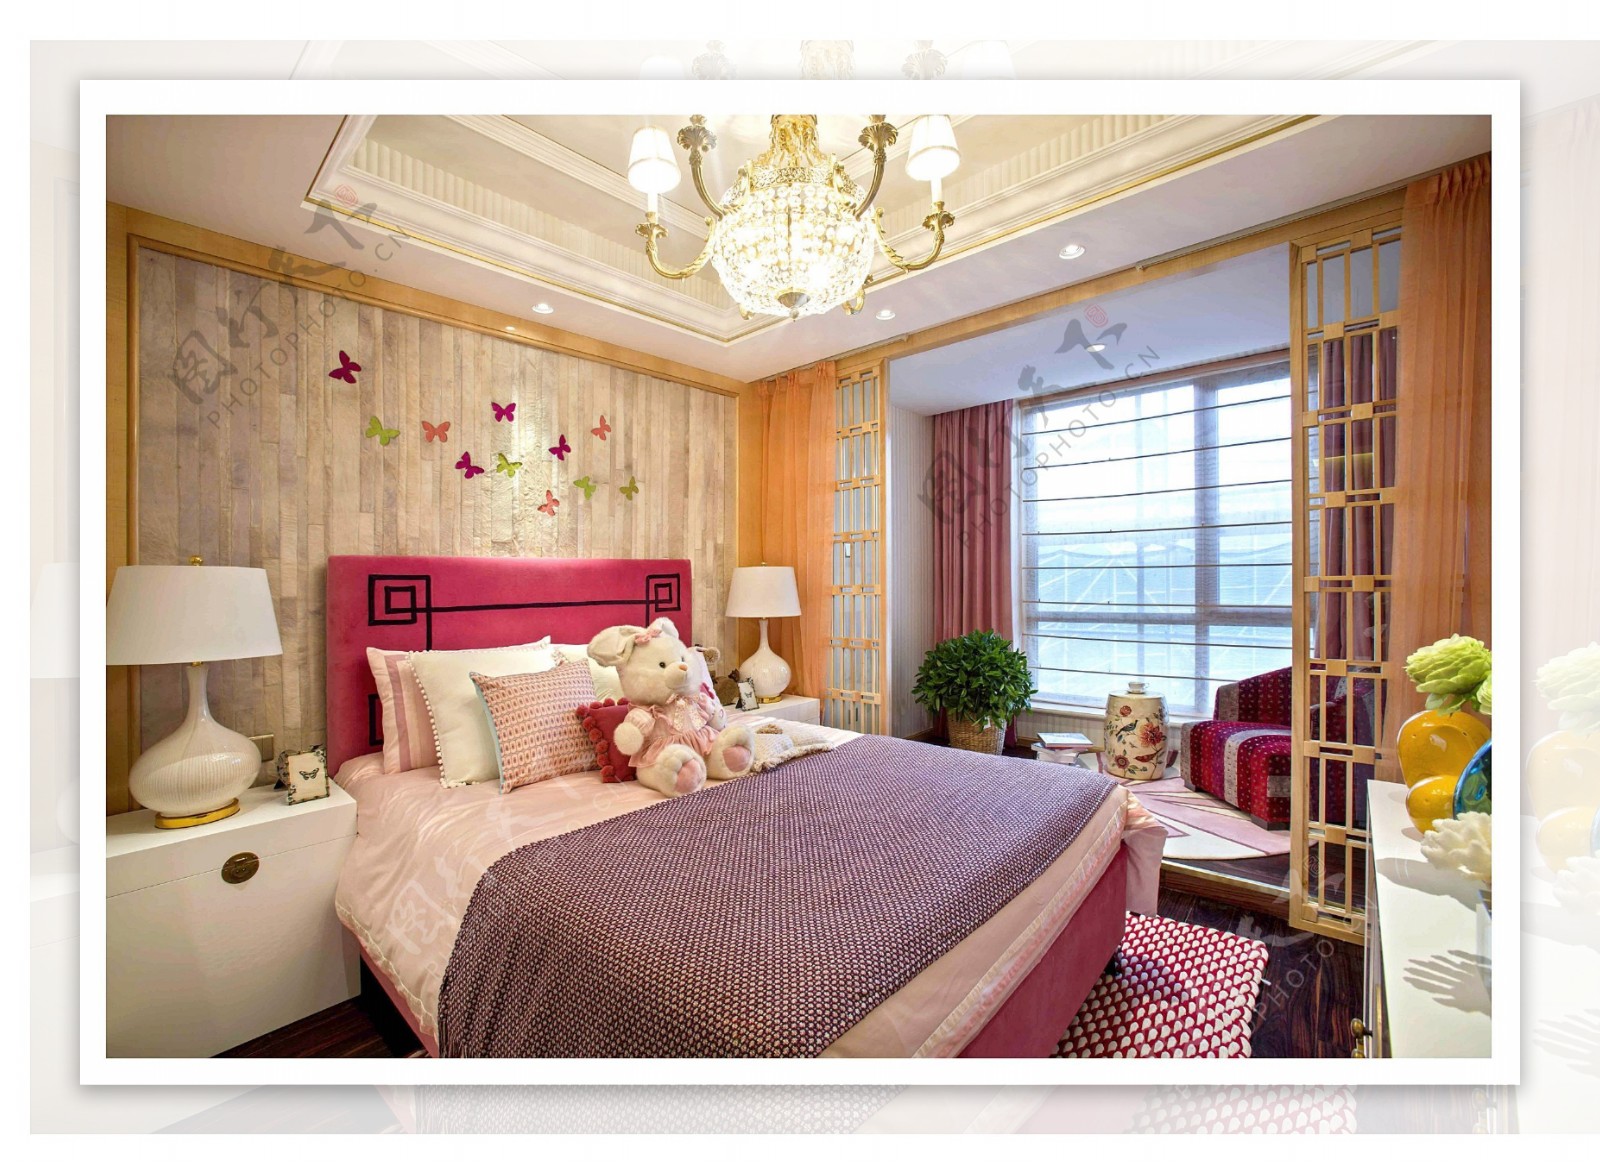 粉色甜美可爱温馨中式风格卧室装修效果图